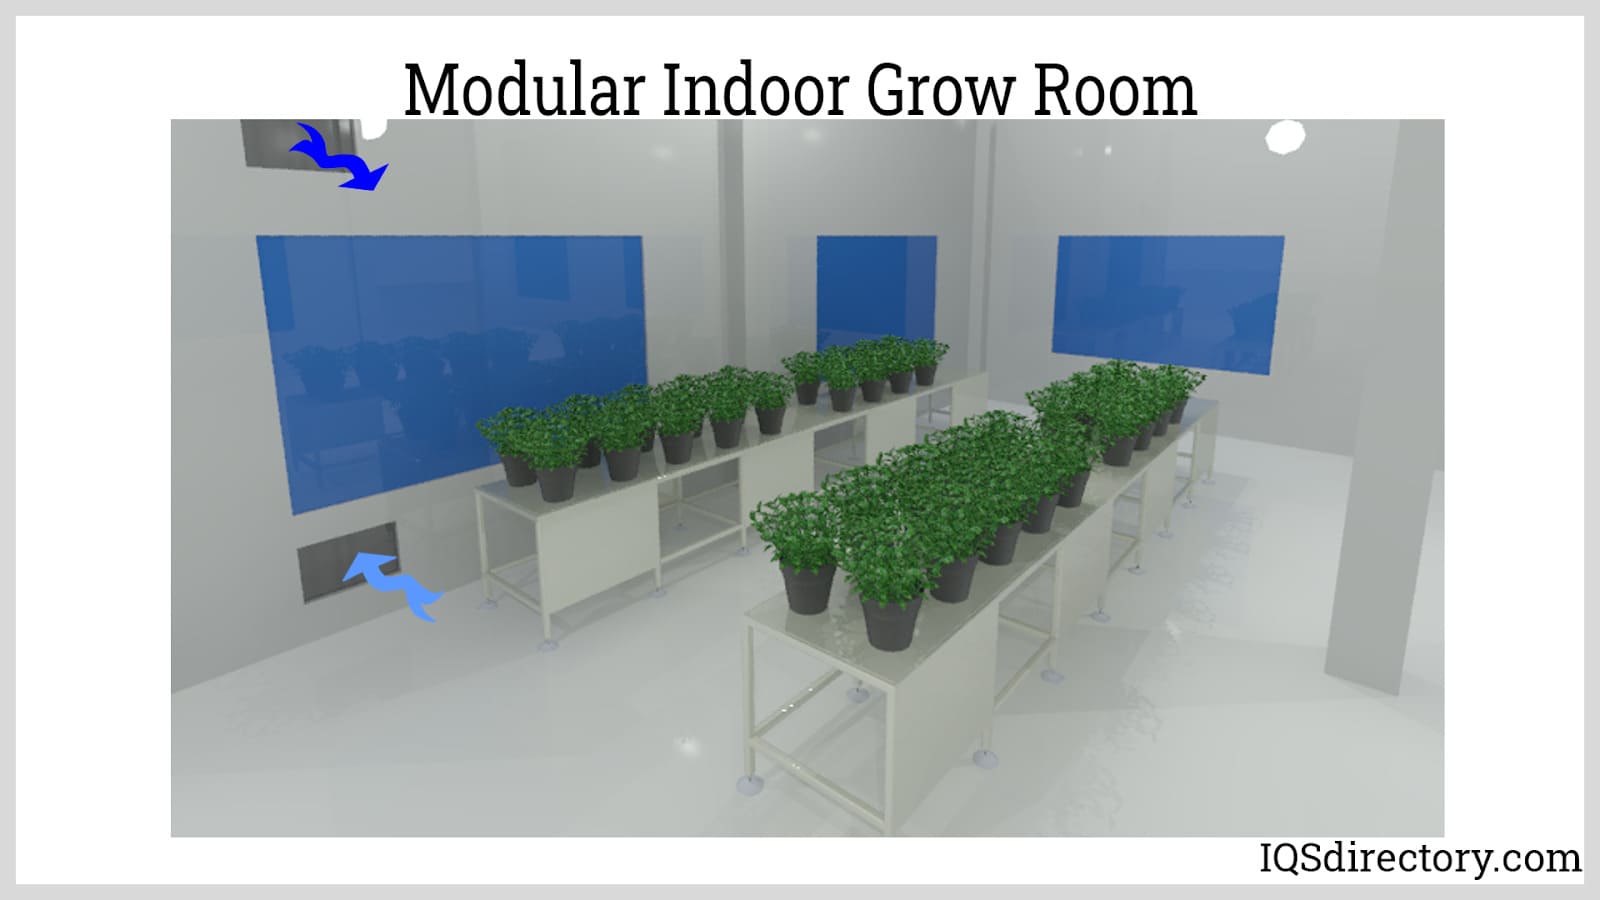 Modular Indoor Grow Room